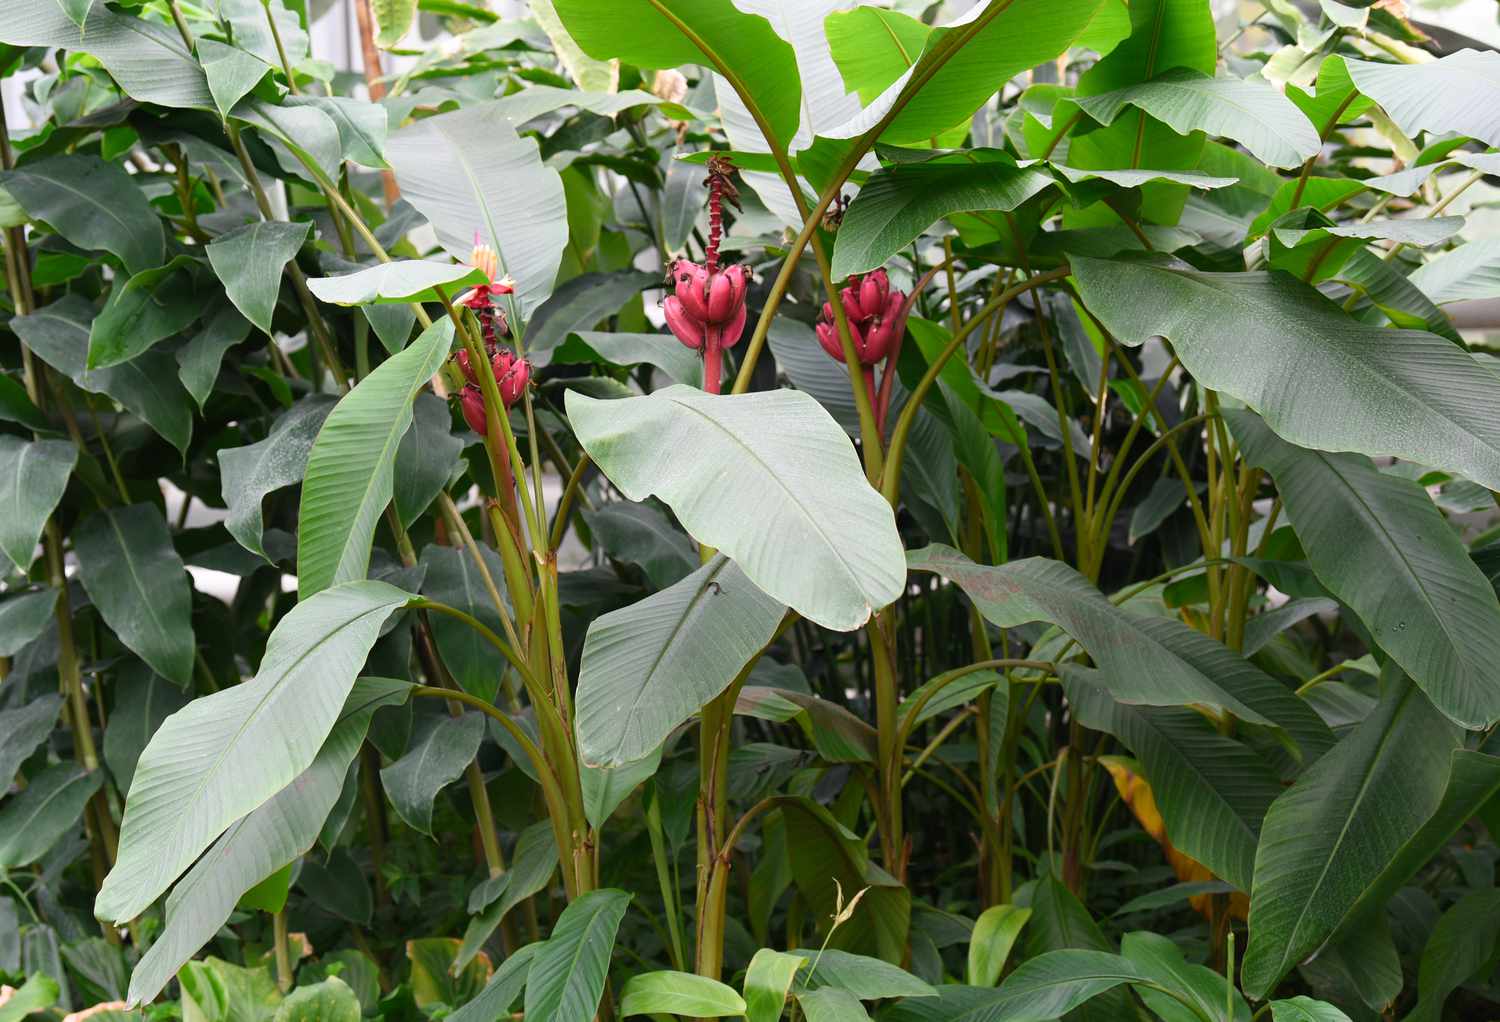 Samtige Bananenbäume mit hohen dicken Stämmen und großen ovalen Blättern, an denen rosa Bananenfrüchte hängen